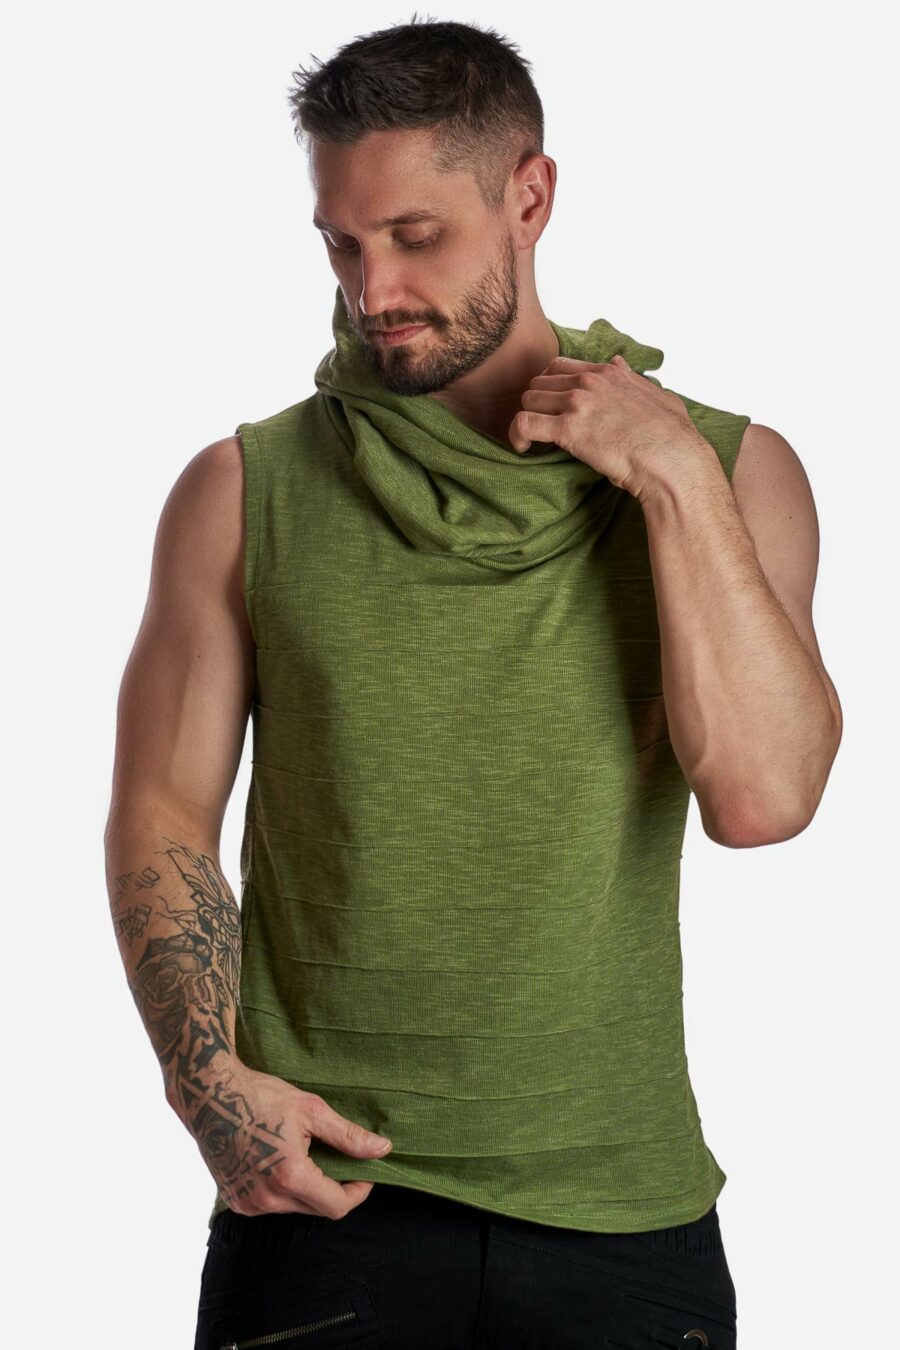 juno-hooded-altrernative-streetwear-tank-top-green-for-men-alternative-streetwear-and-festival-fashion-avanyah